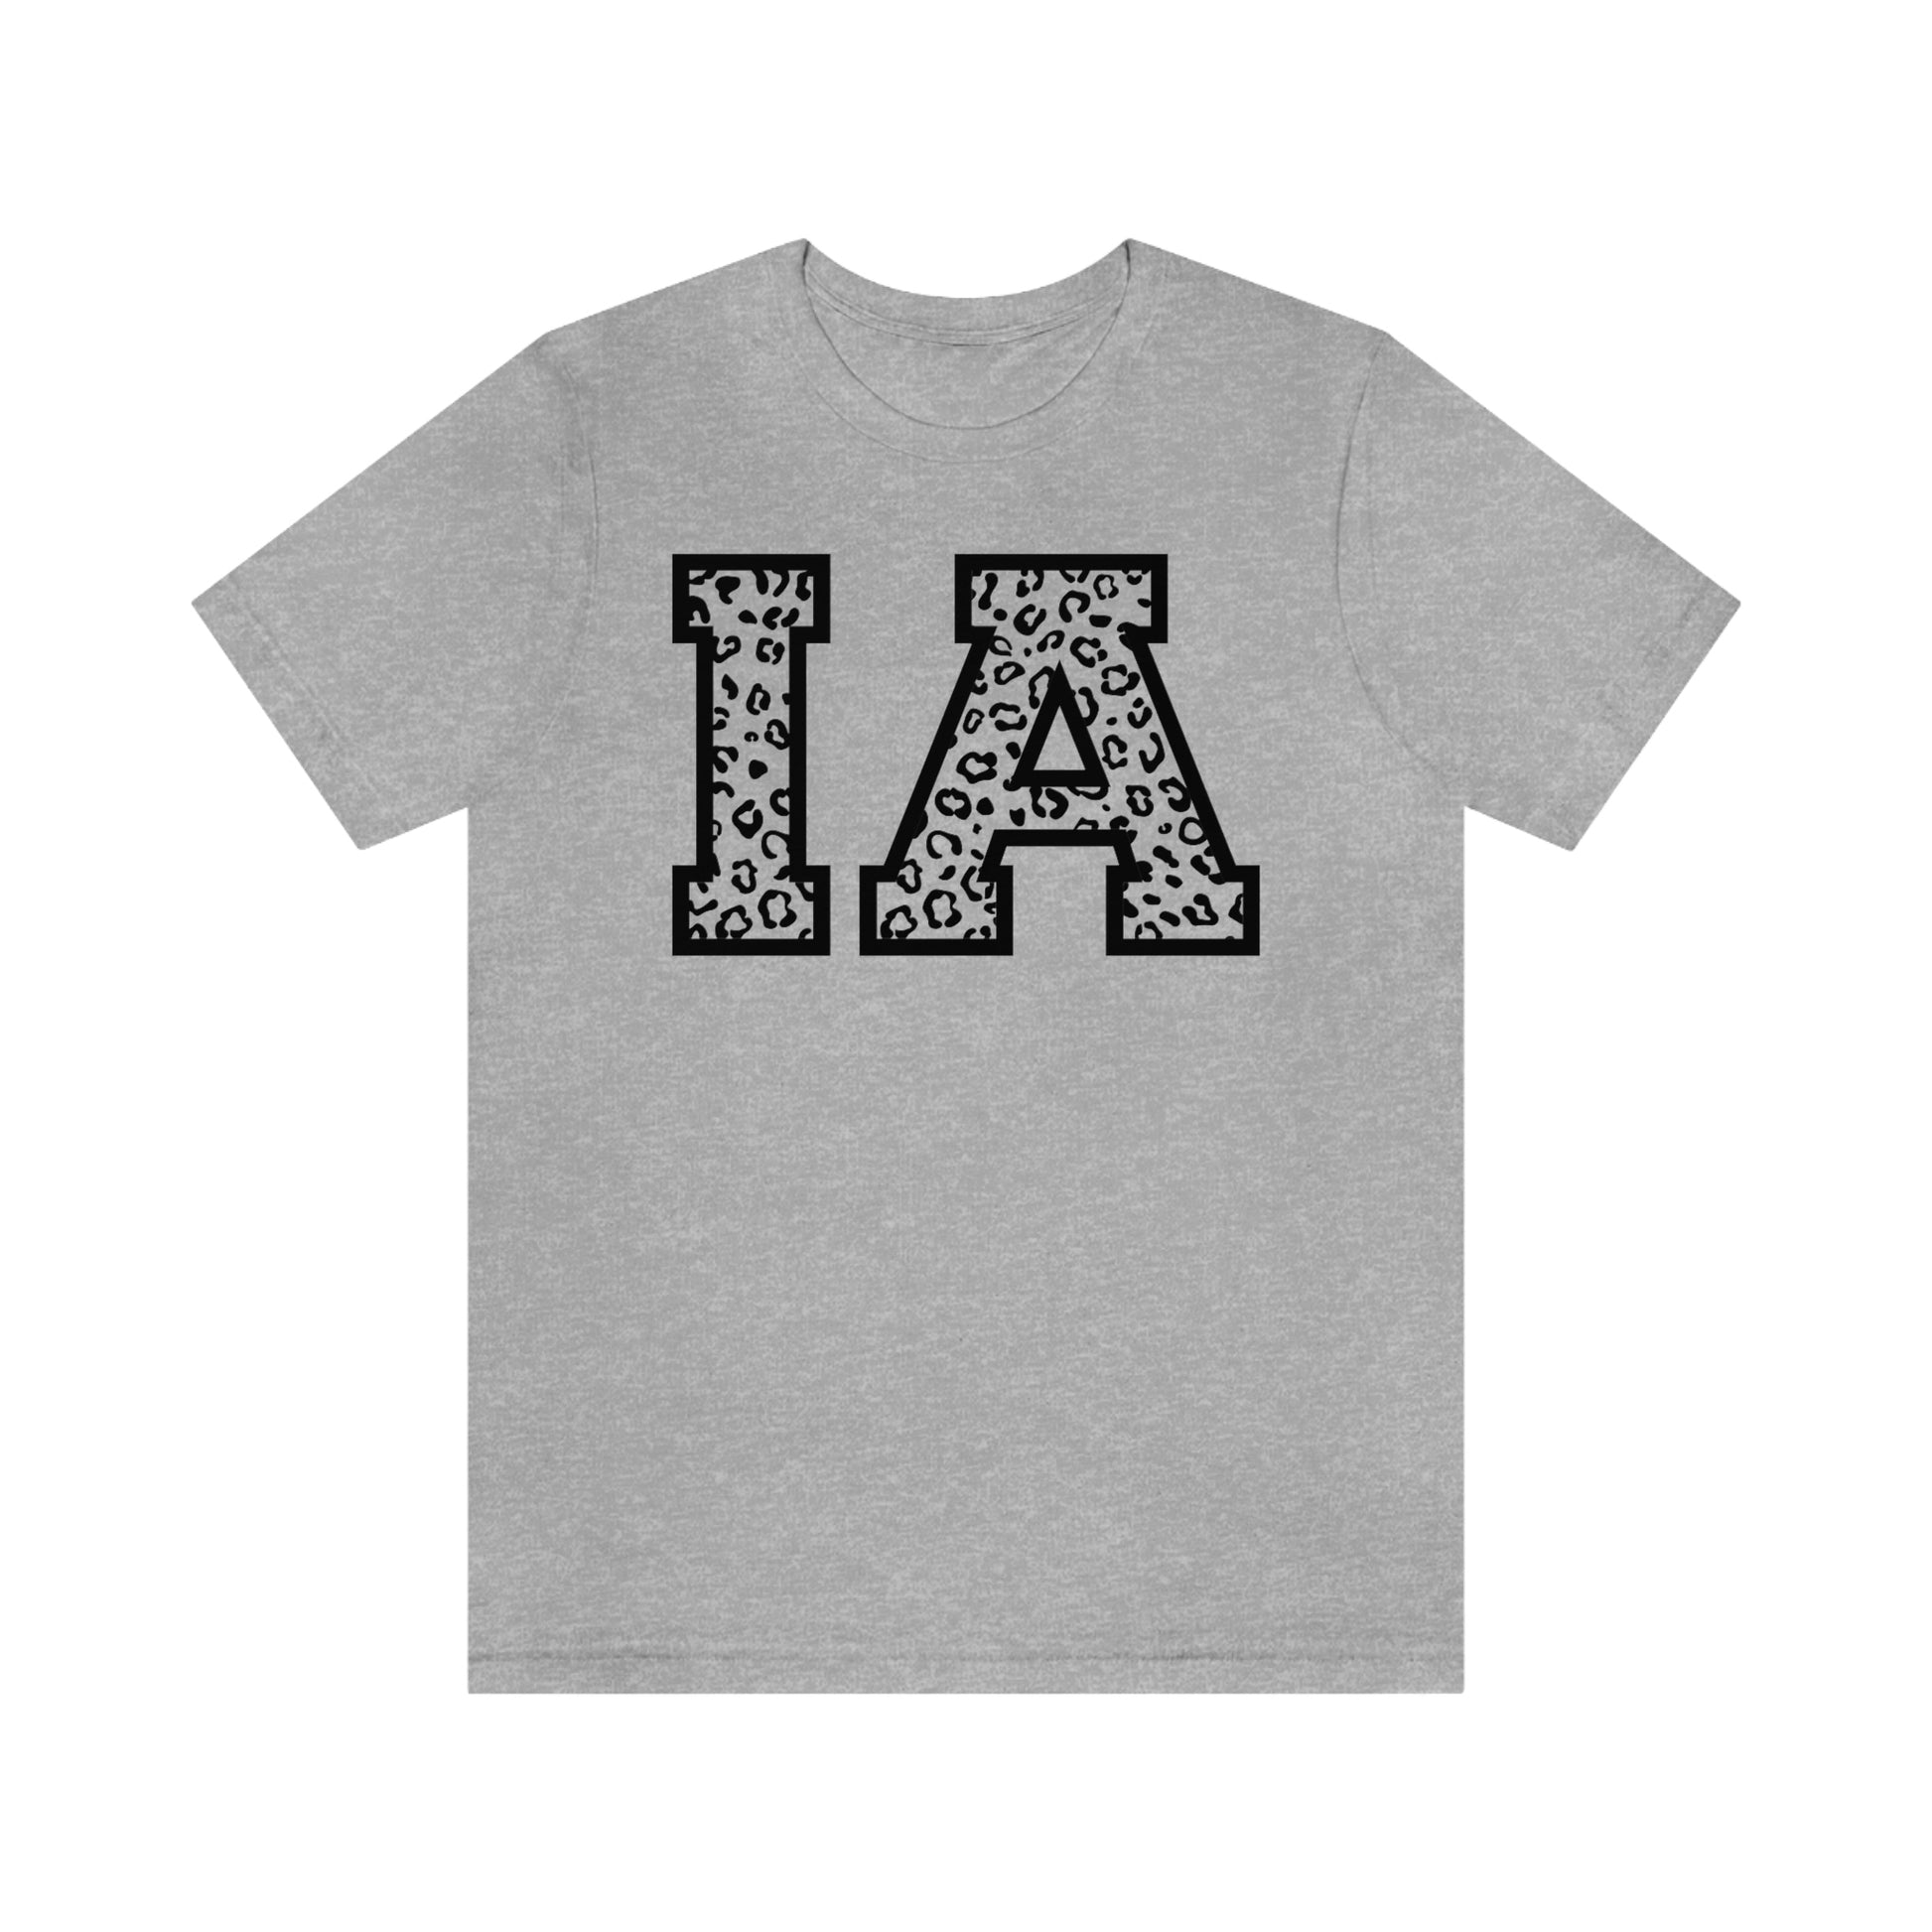 Iowa IA Leopard Print Letters Short Sleeve T-shirt